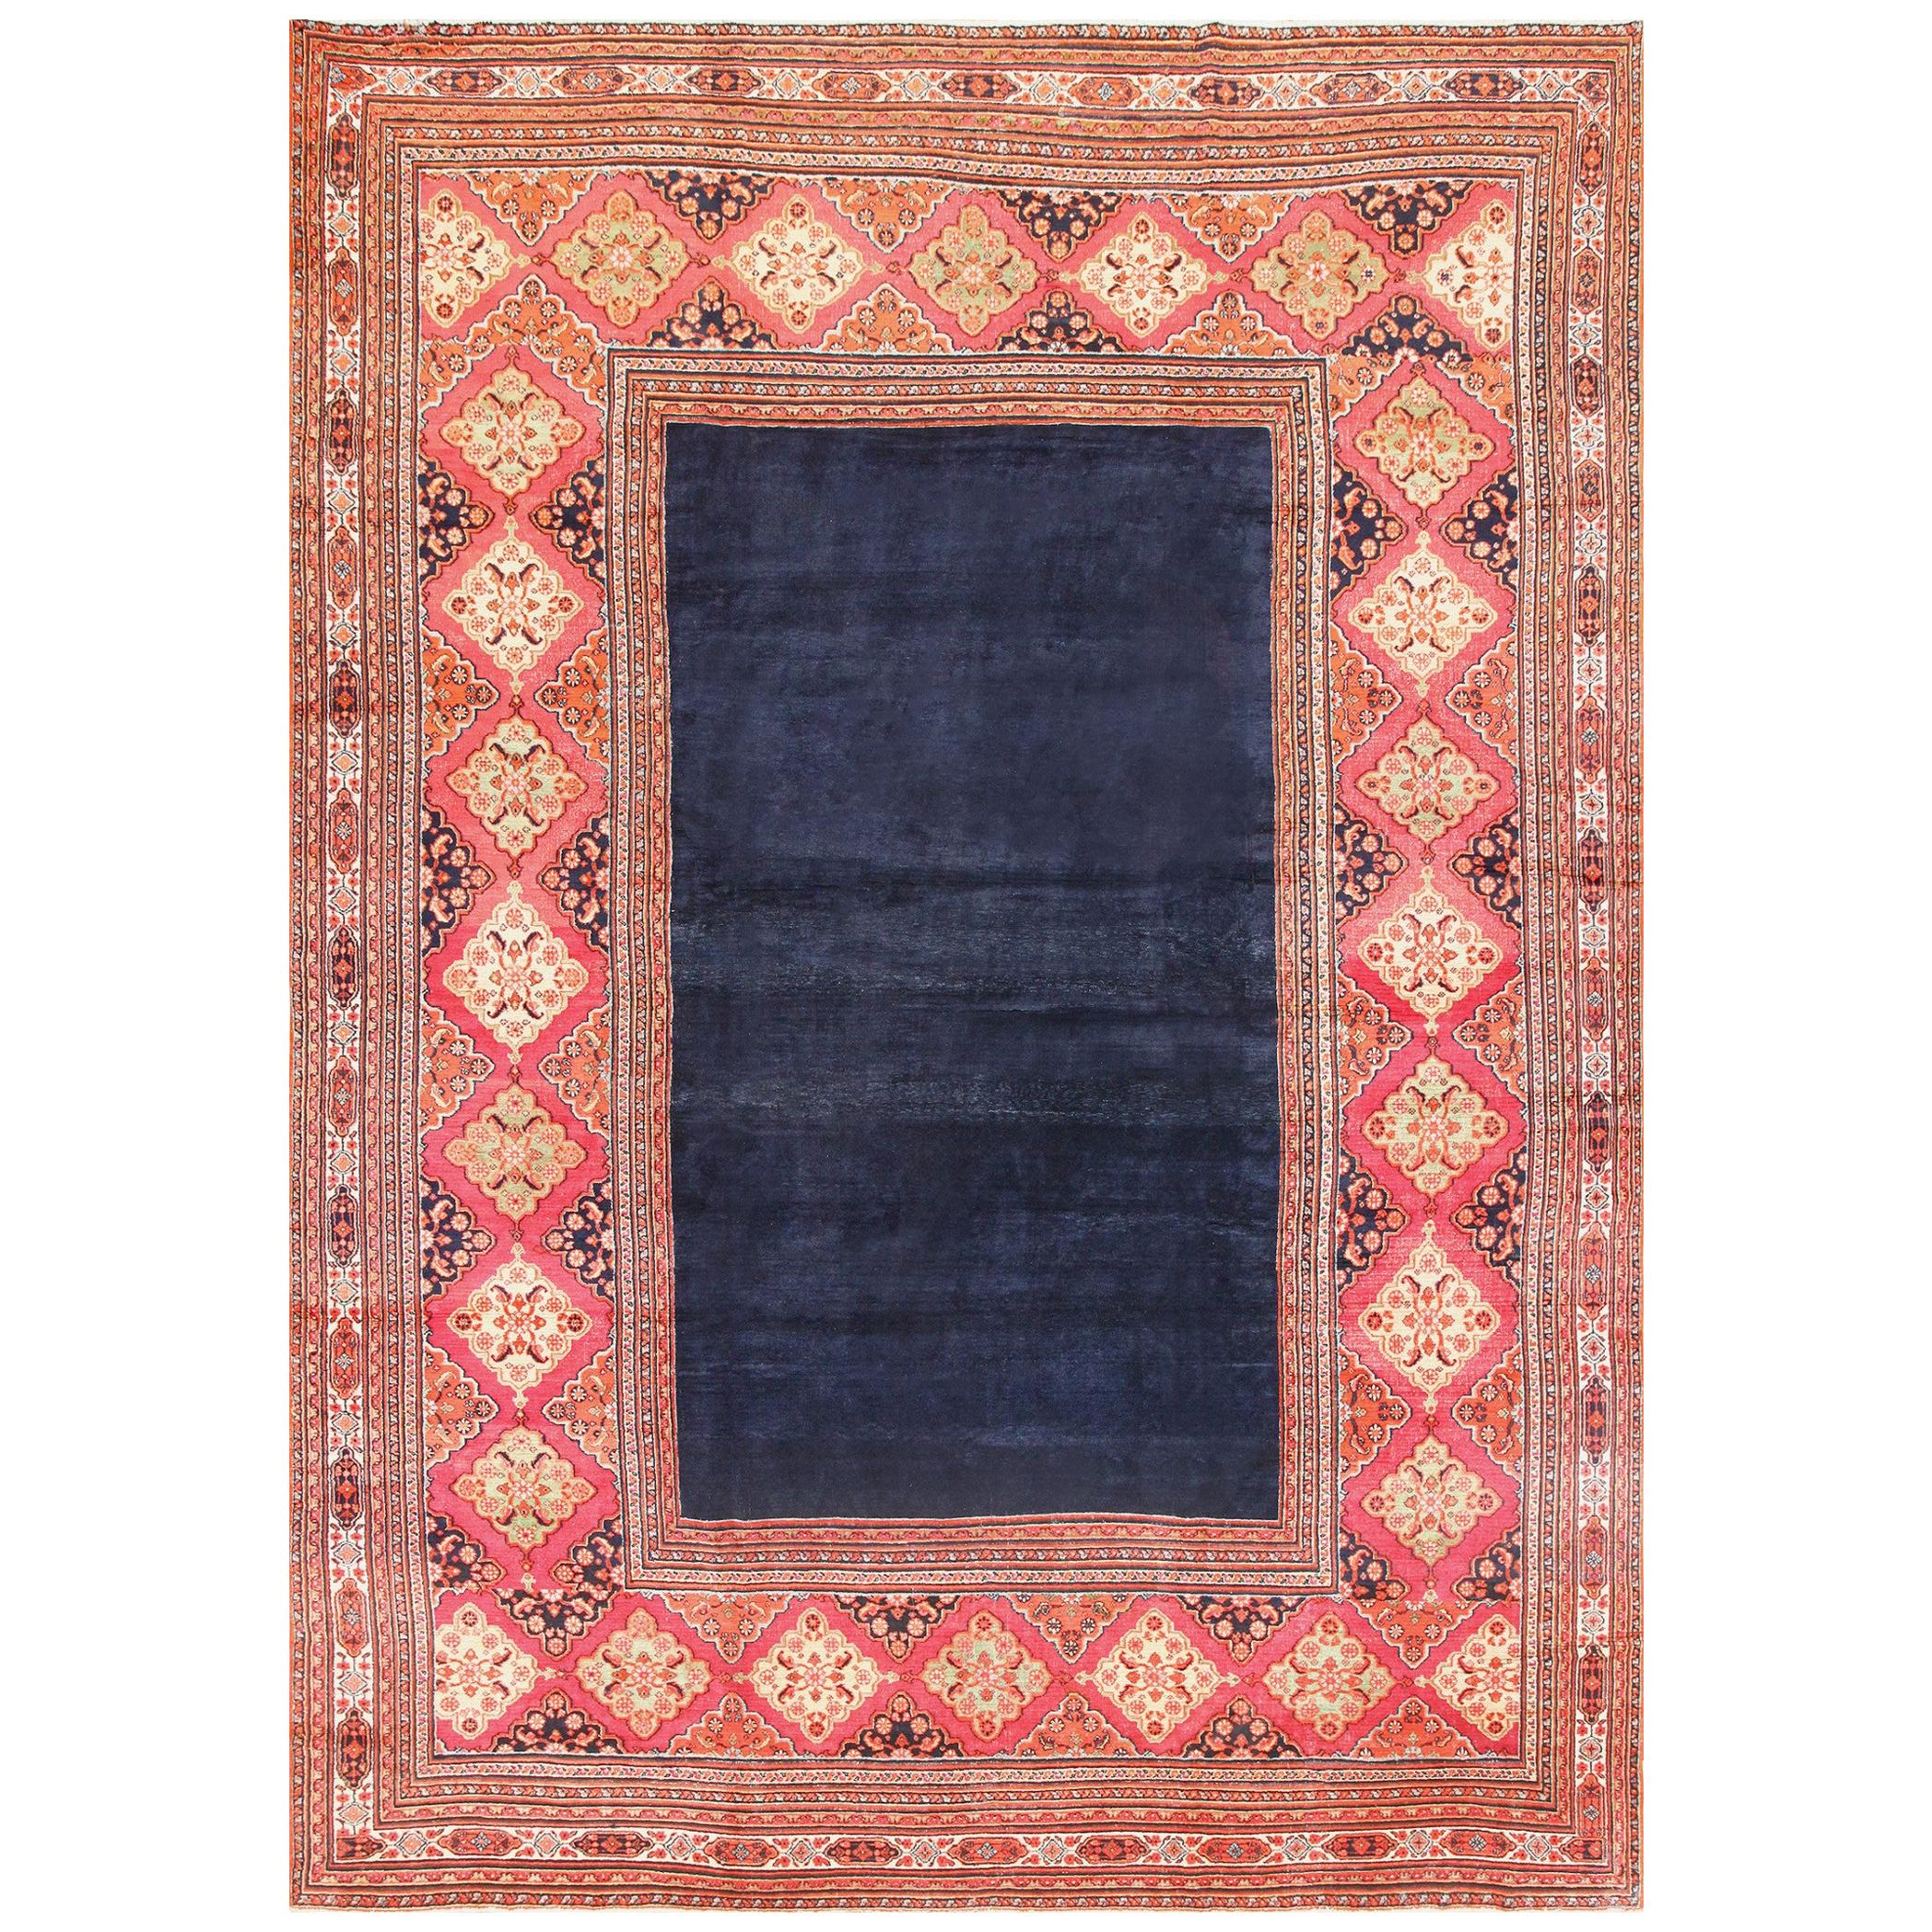 Antique Persian Khorassan Carpet. Size: 11' 9" x 16' 3"